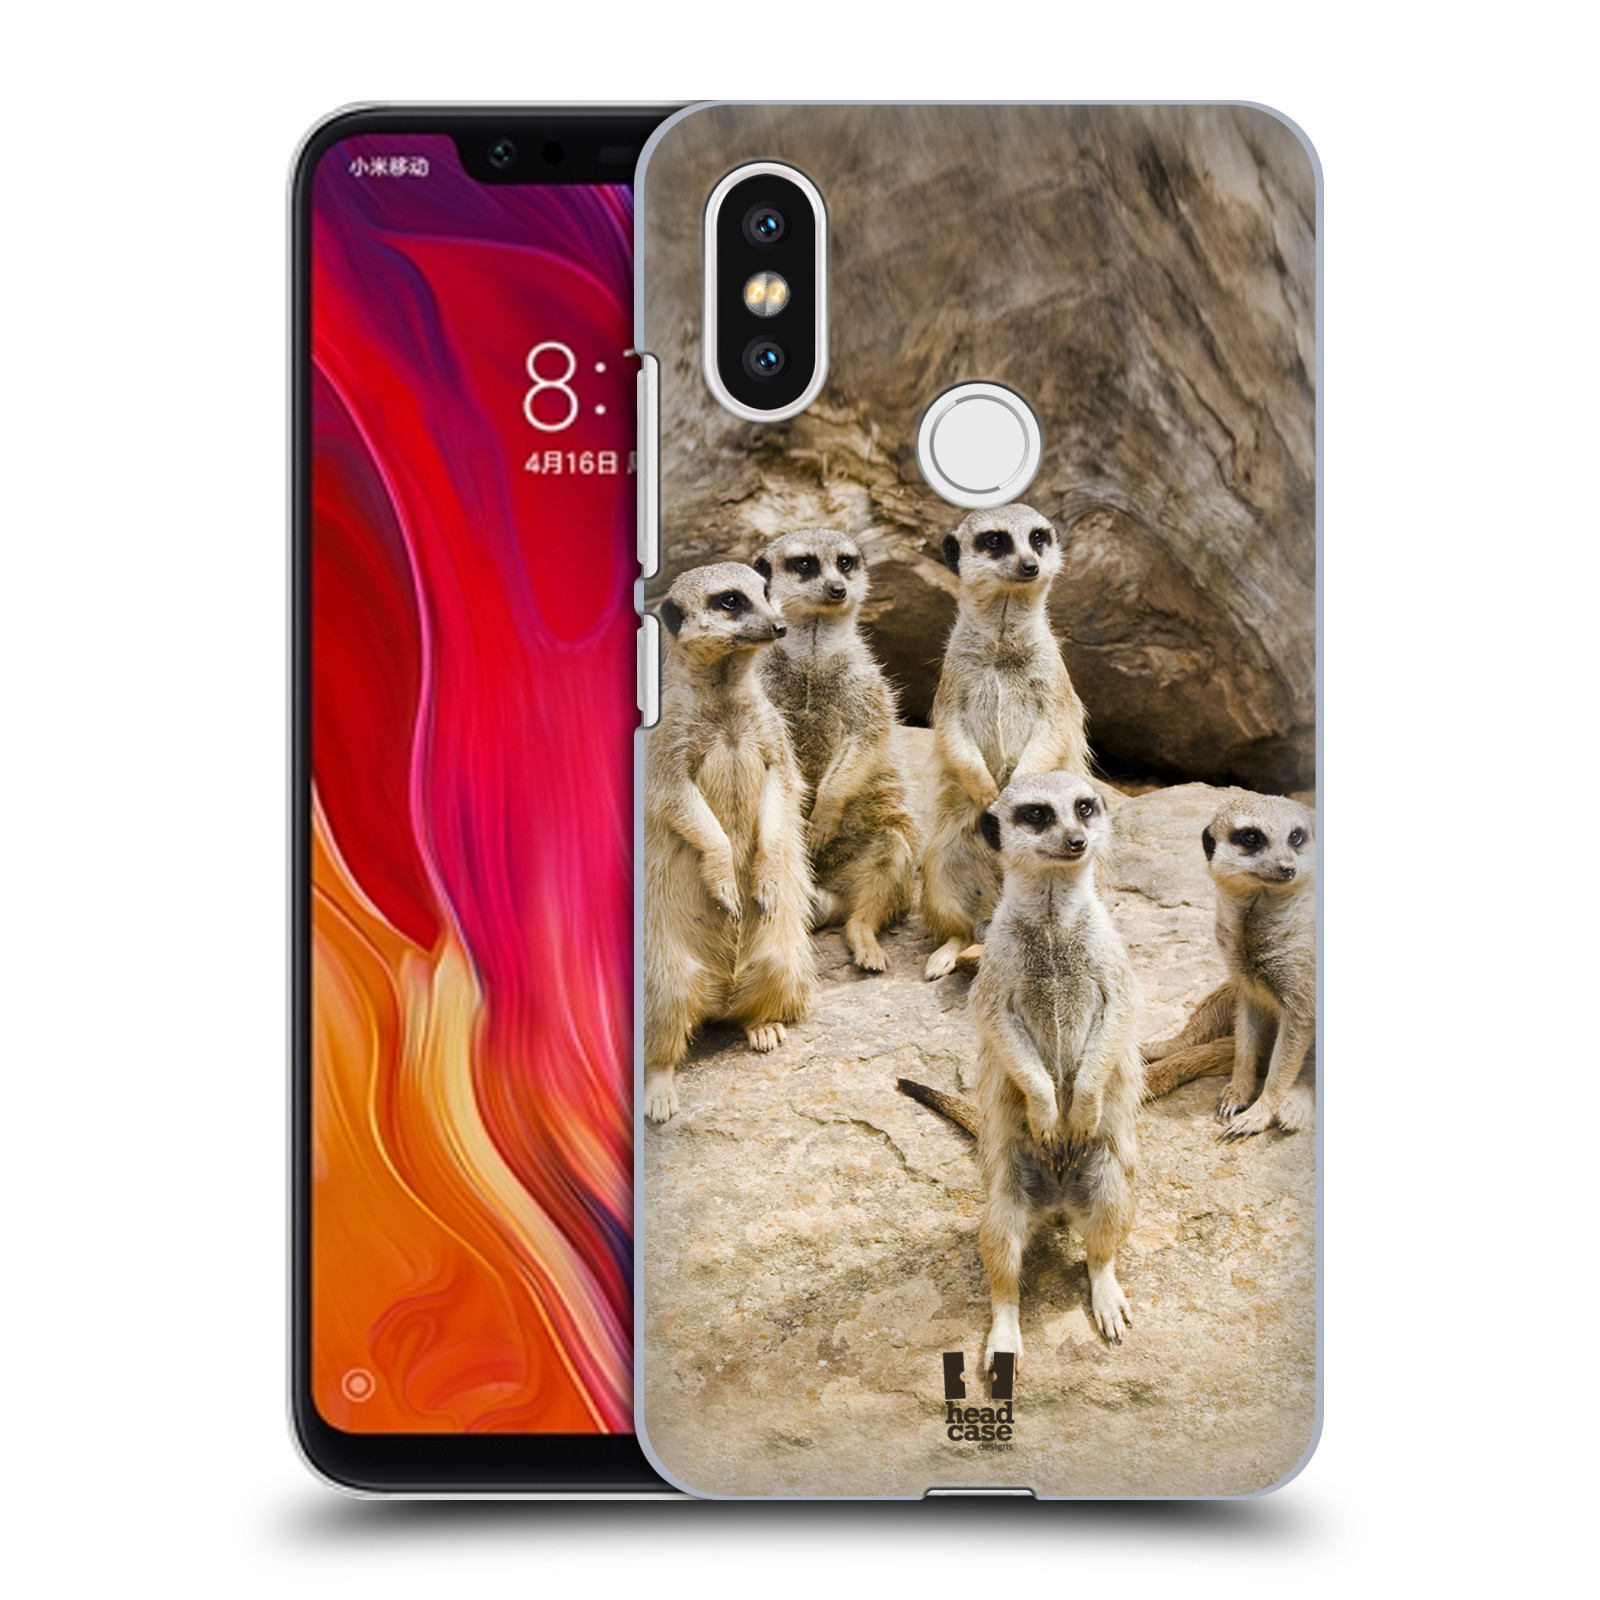 Zadní obal pro mobil Xiaomi Mi 8 - HEAD CASE - Svět zvířat roztomilé surikaty